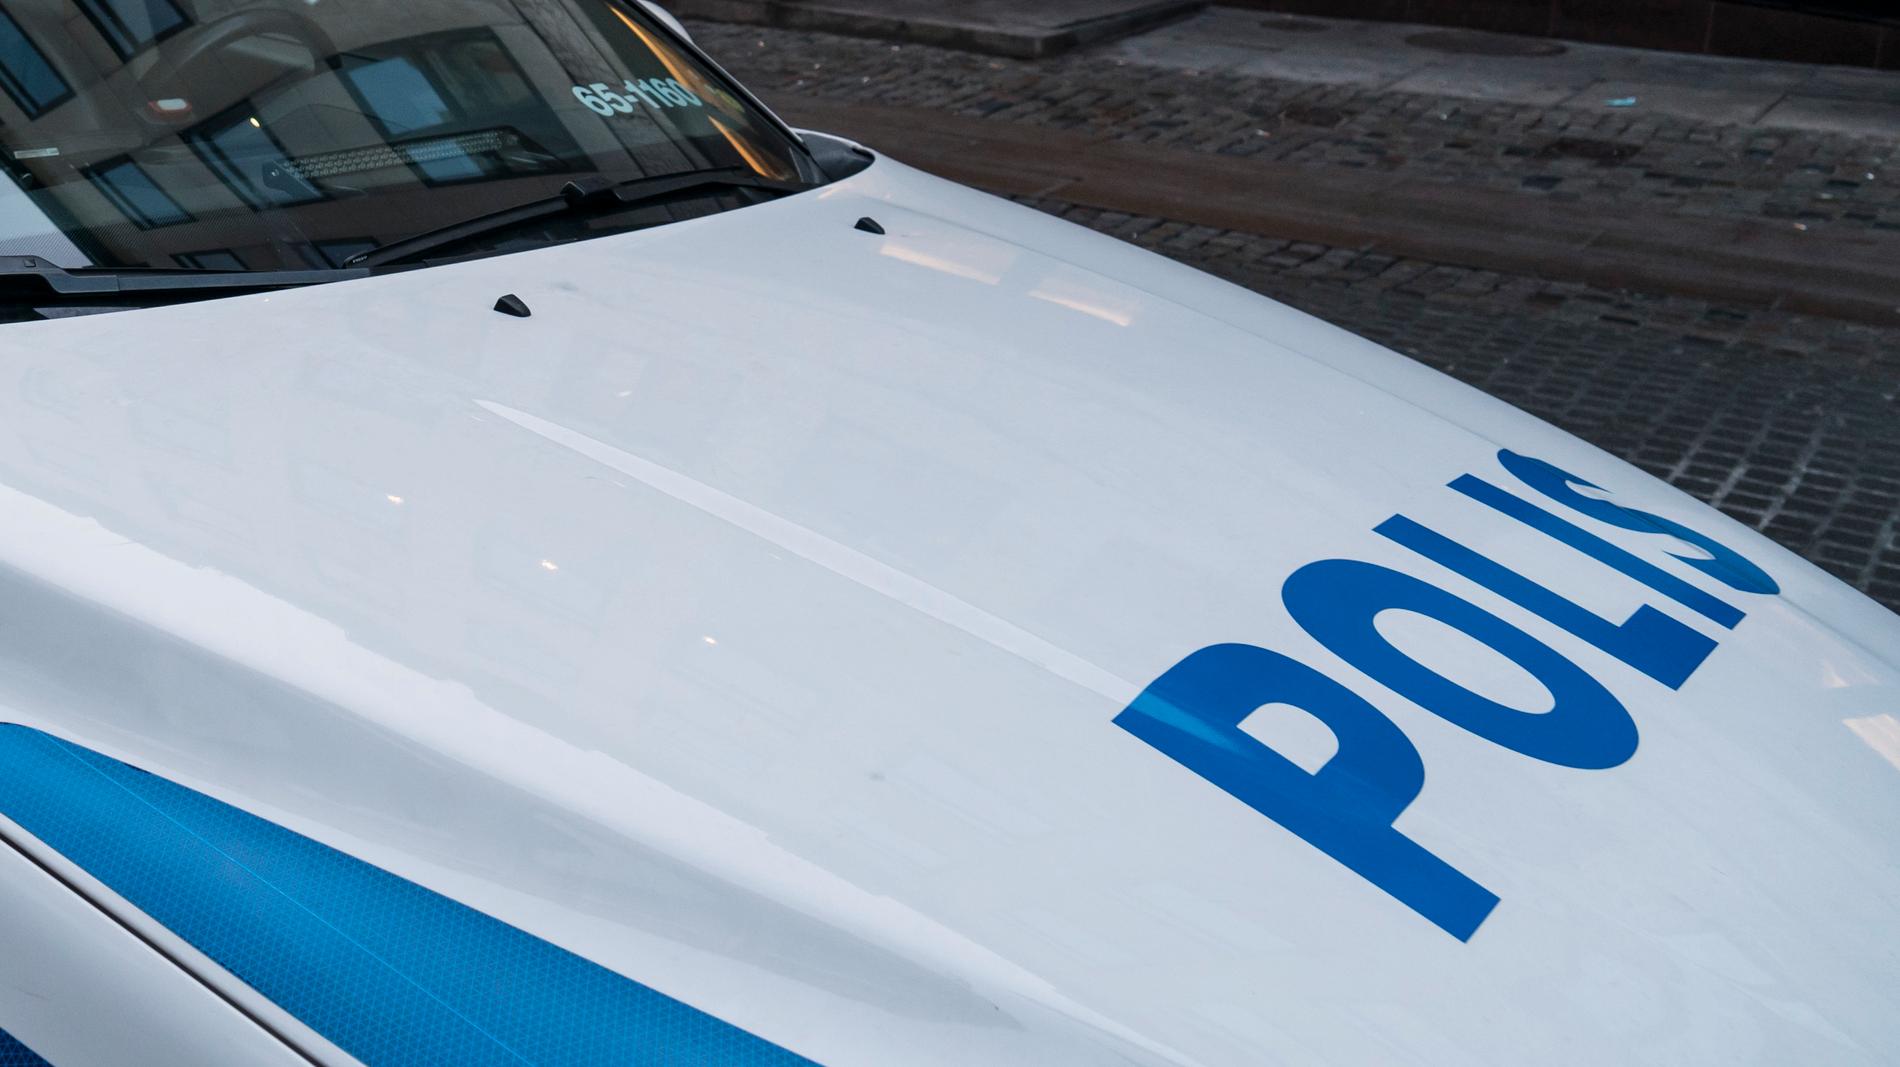 En man i 35-årsåldern har anhållits av polisen misstänkt för en våldtäkt i somras i norra Bohuslän. Arkivbild.